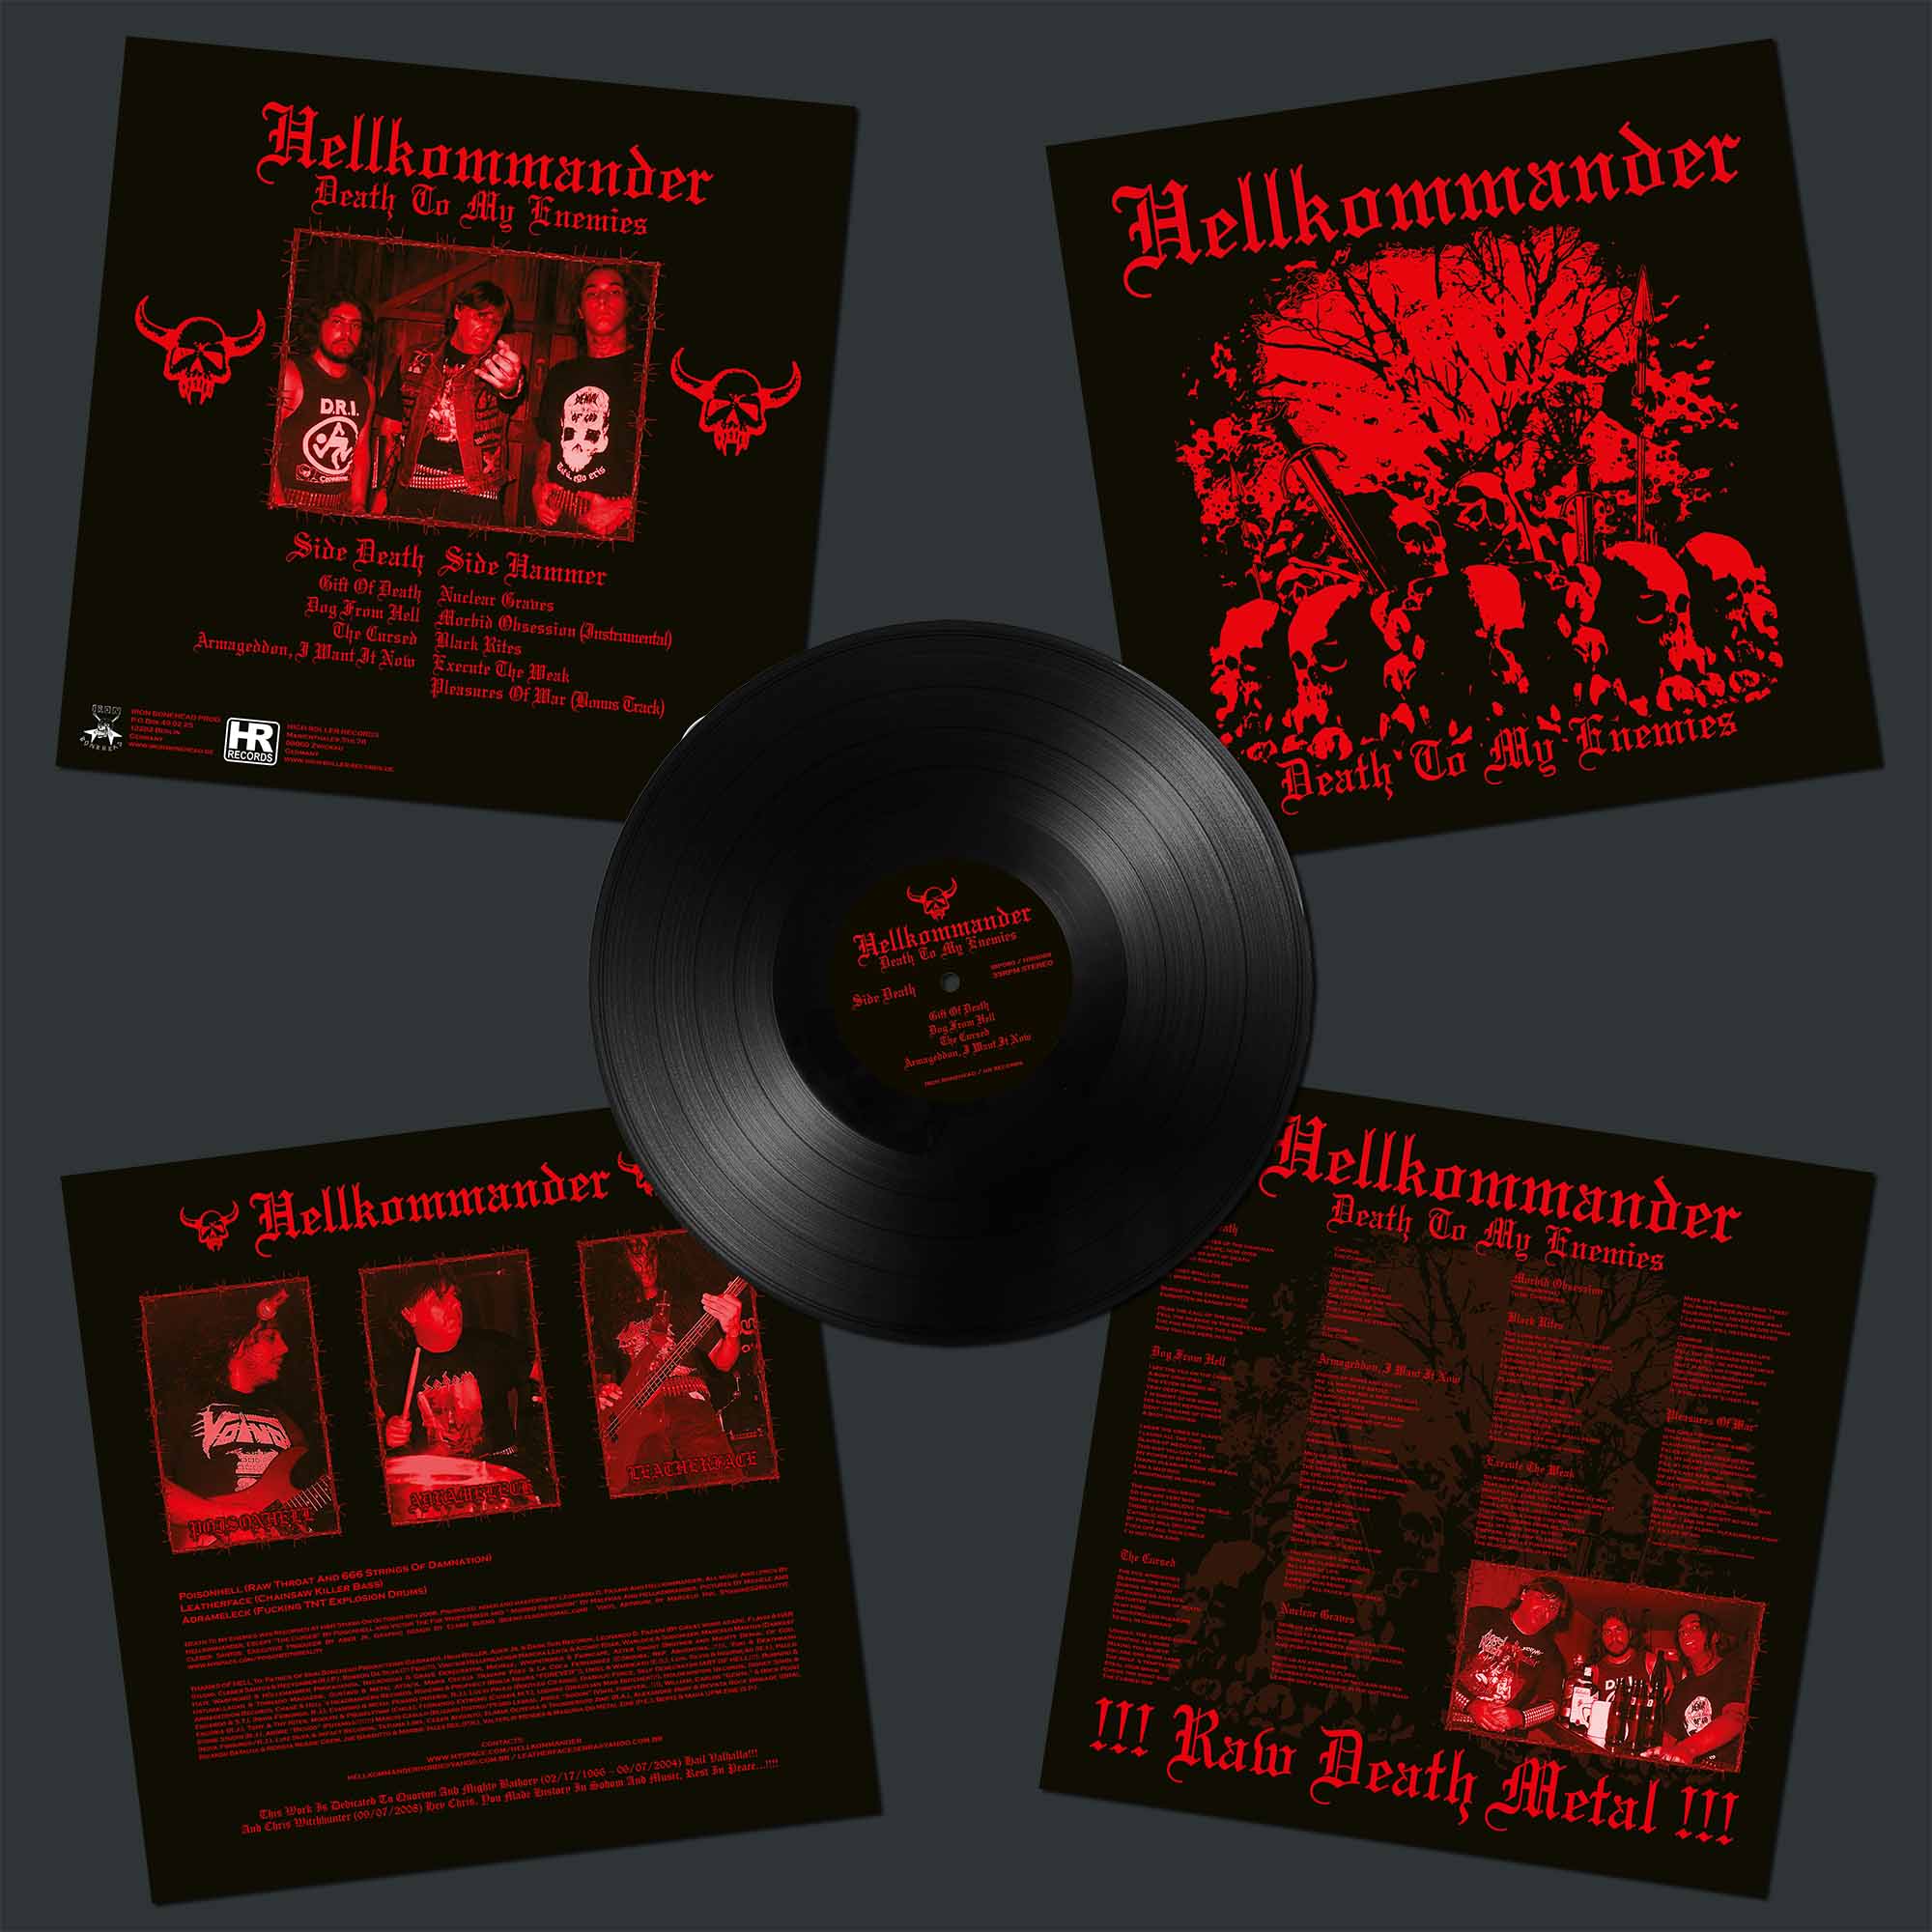 HELLKOMMANDER - Death To My Enemies LP